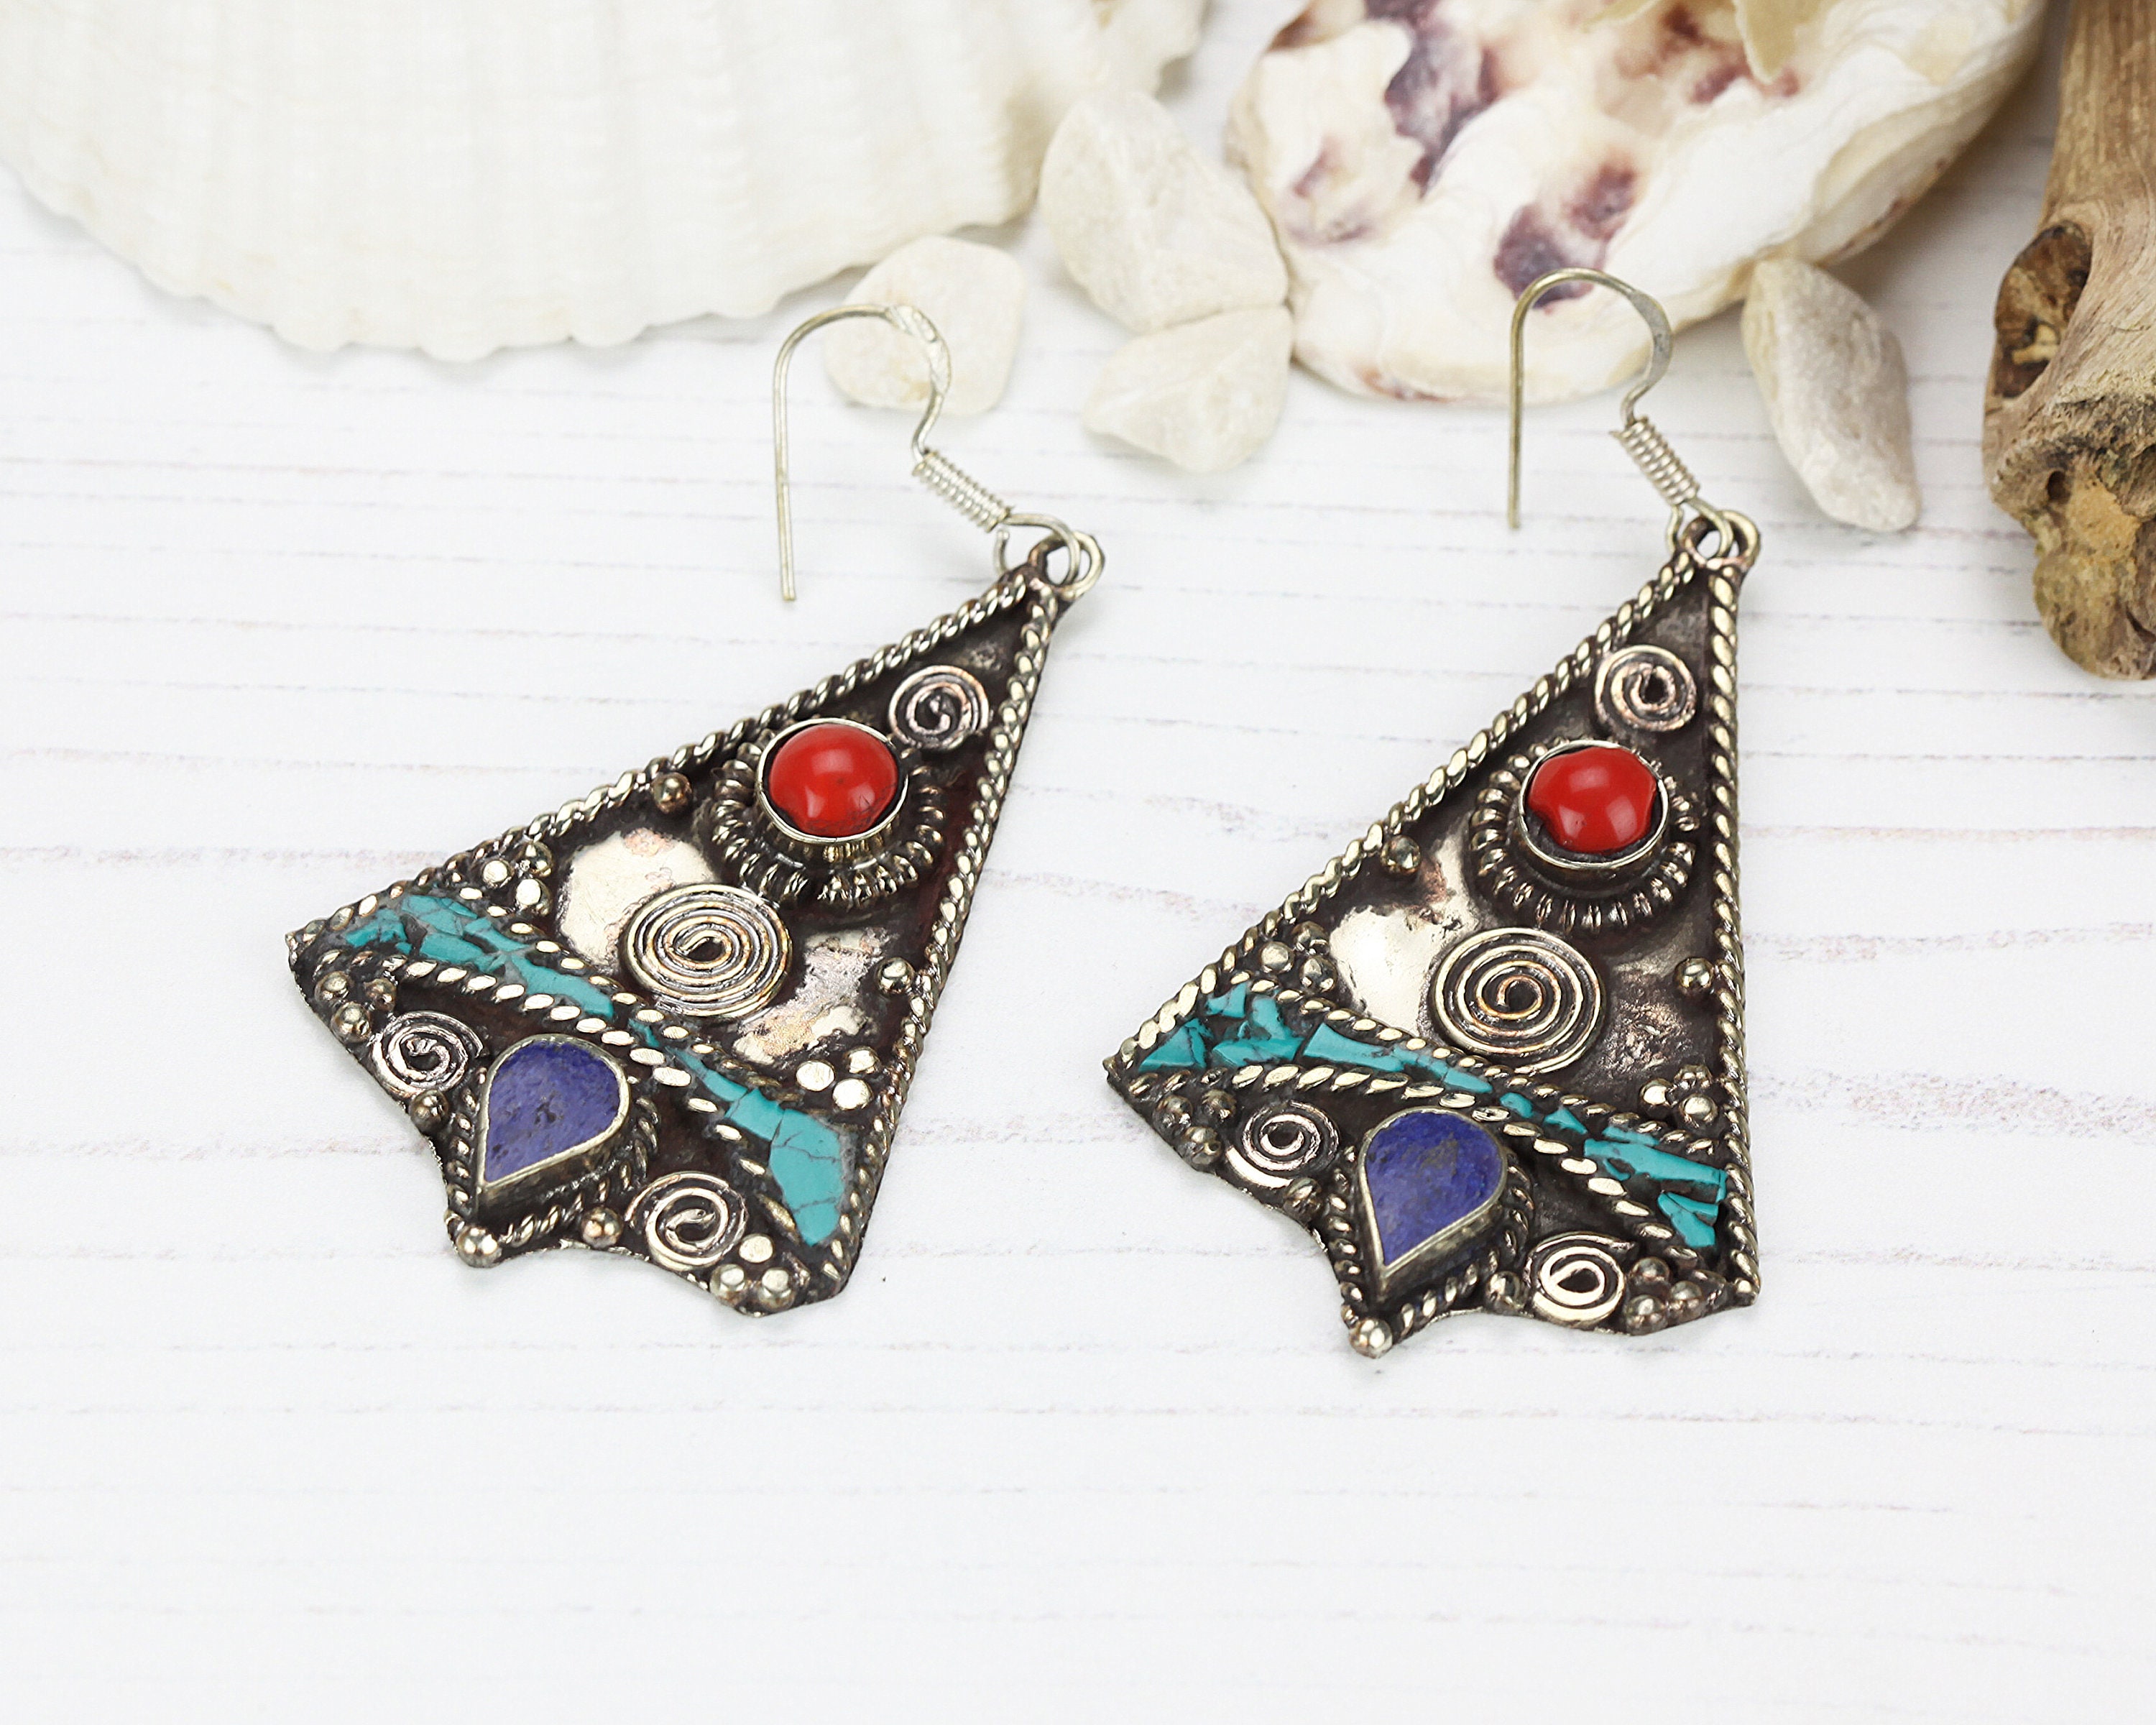 Geometric boho earrings / Tibetan hippie style jewellery / | Etsy